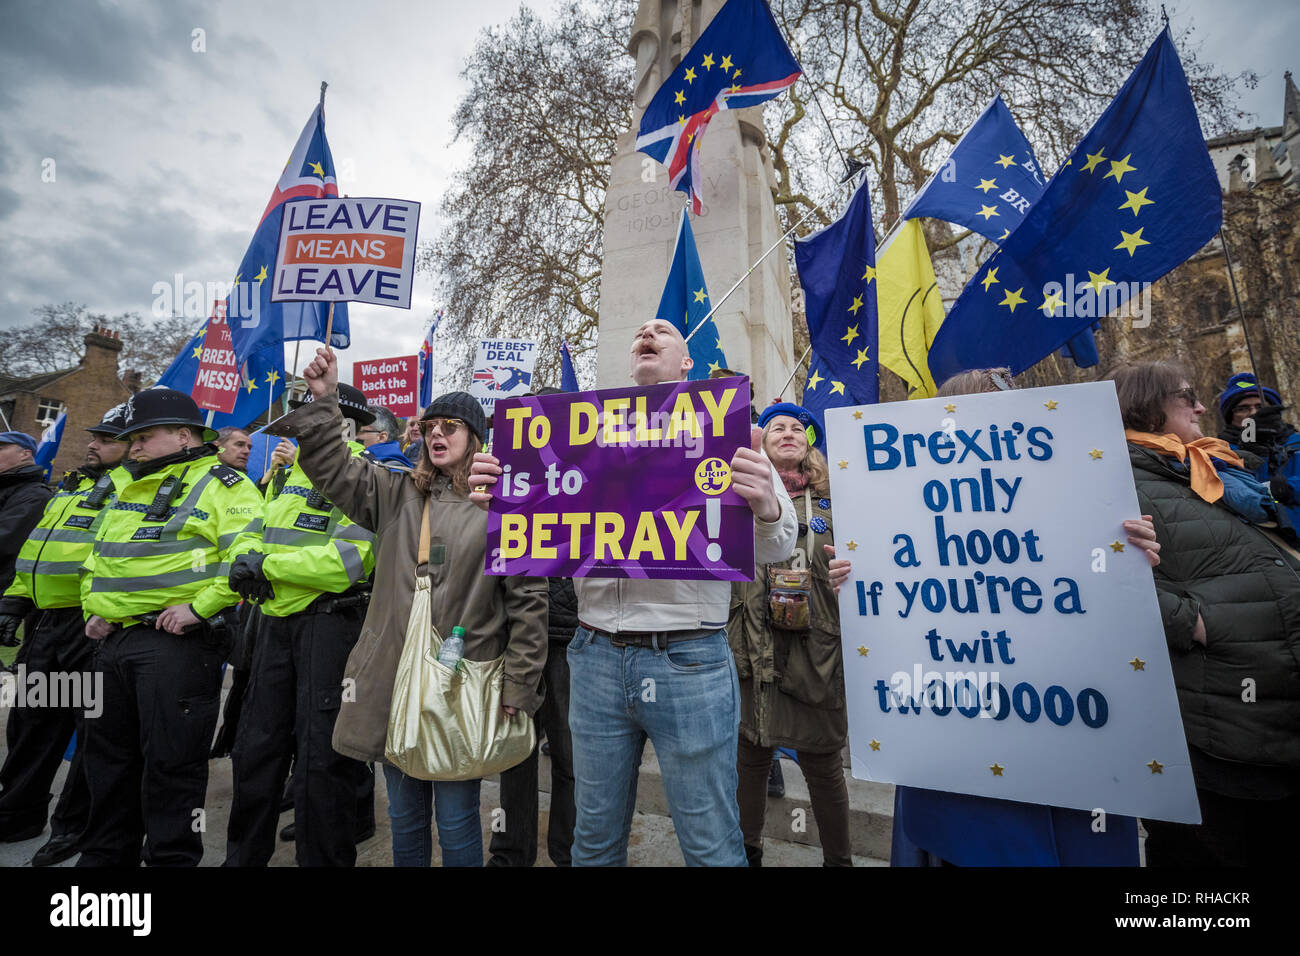 Pro et anti-manifestants Brexit recueillir et de protestation à l'extérieur des édifices du Parlement à Westminster, Londres. Banque D'Images